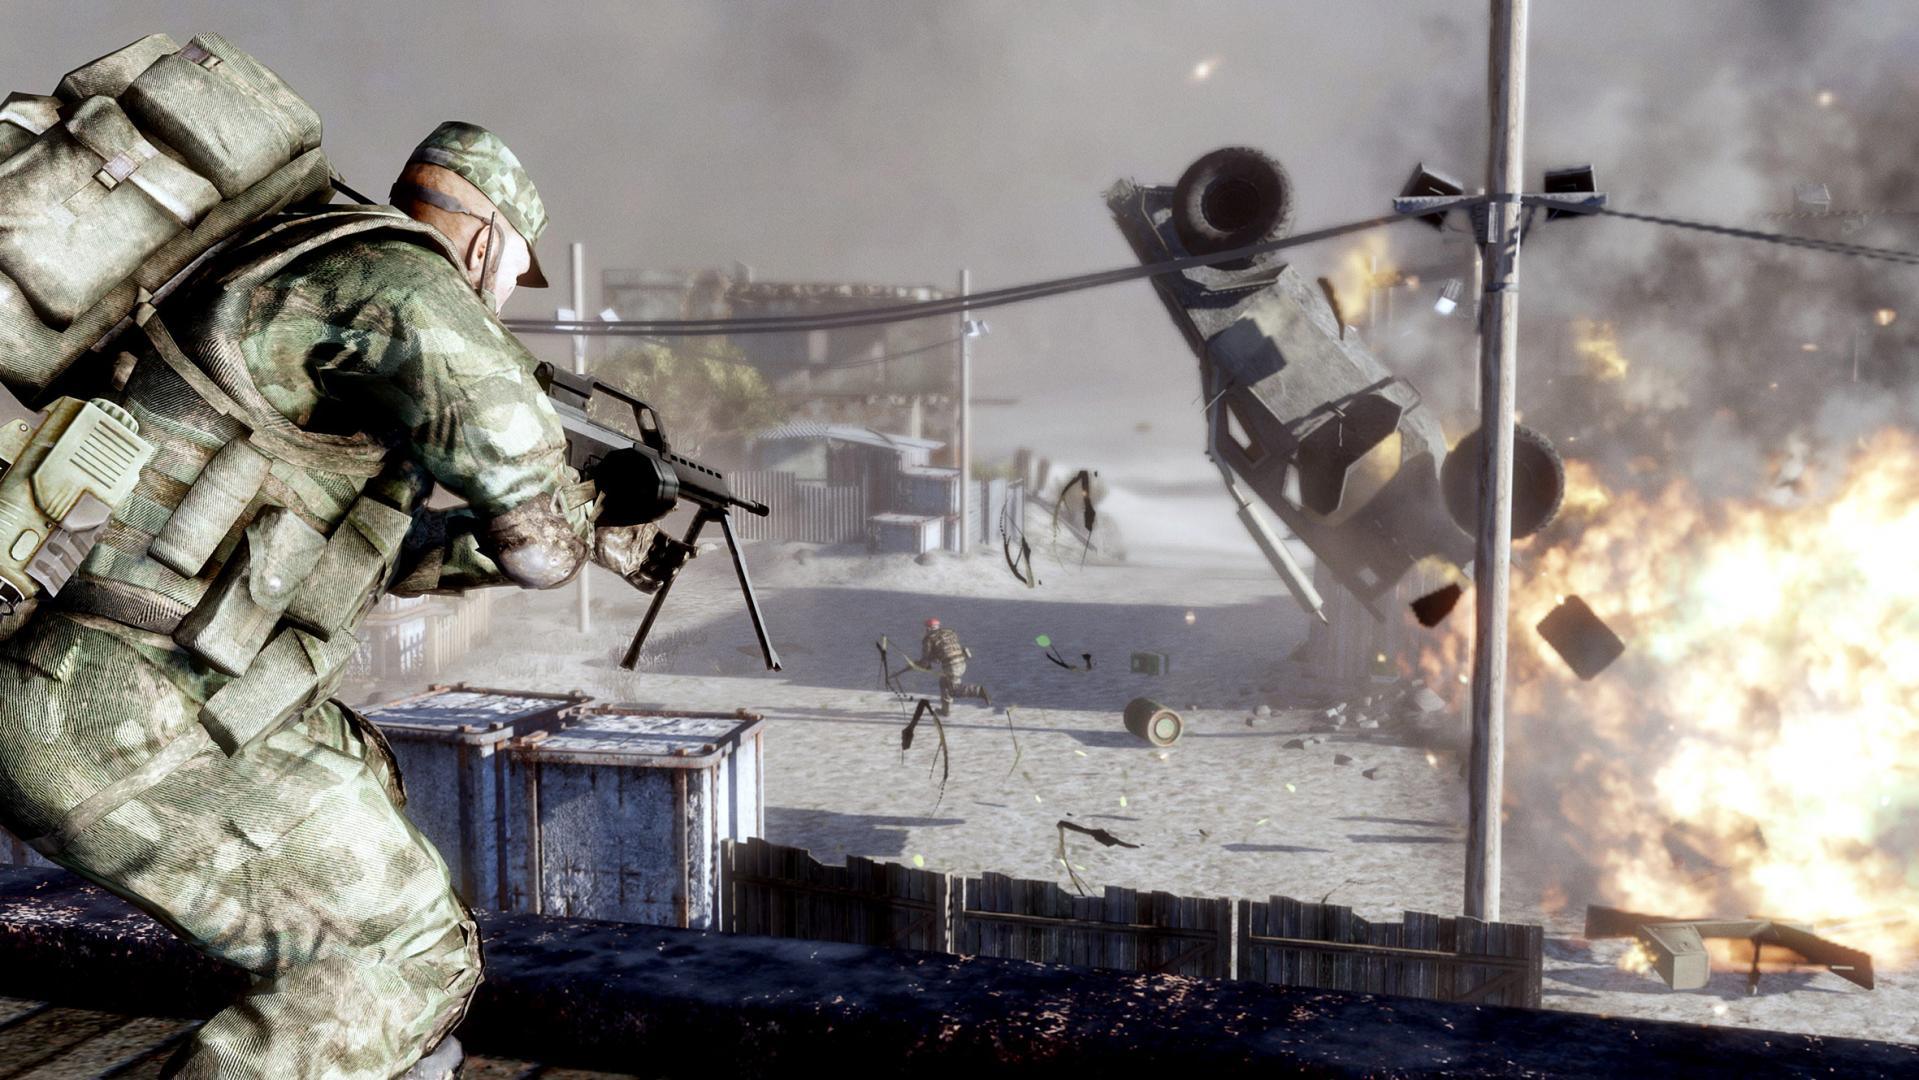 Battlefield Bad Company 2 guaranteed ✅ | offline